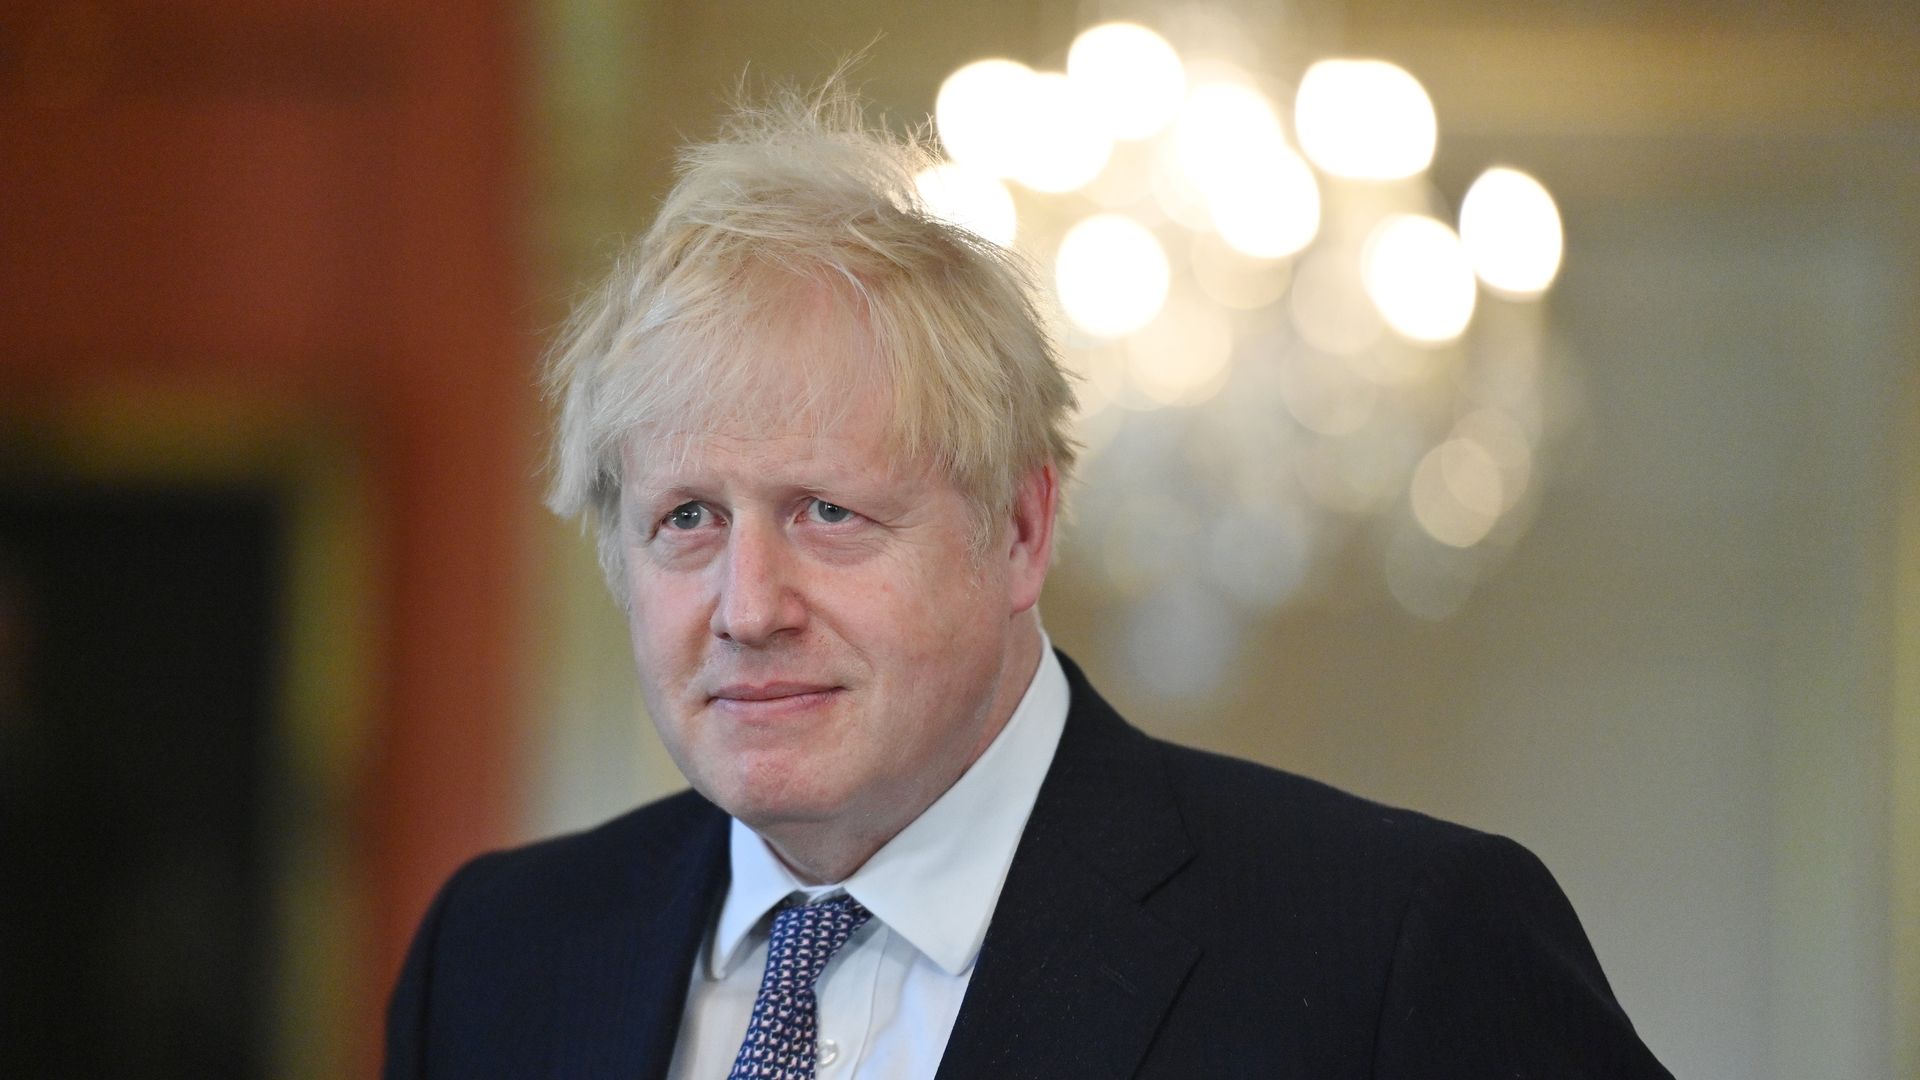 Boris Johnson, the Prime Minister of the U.K.